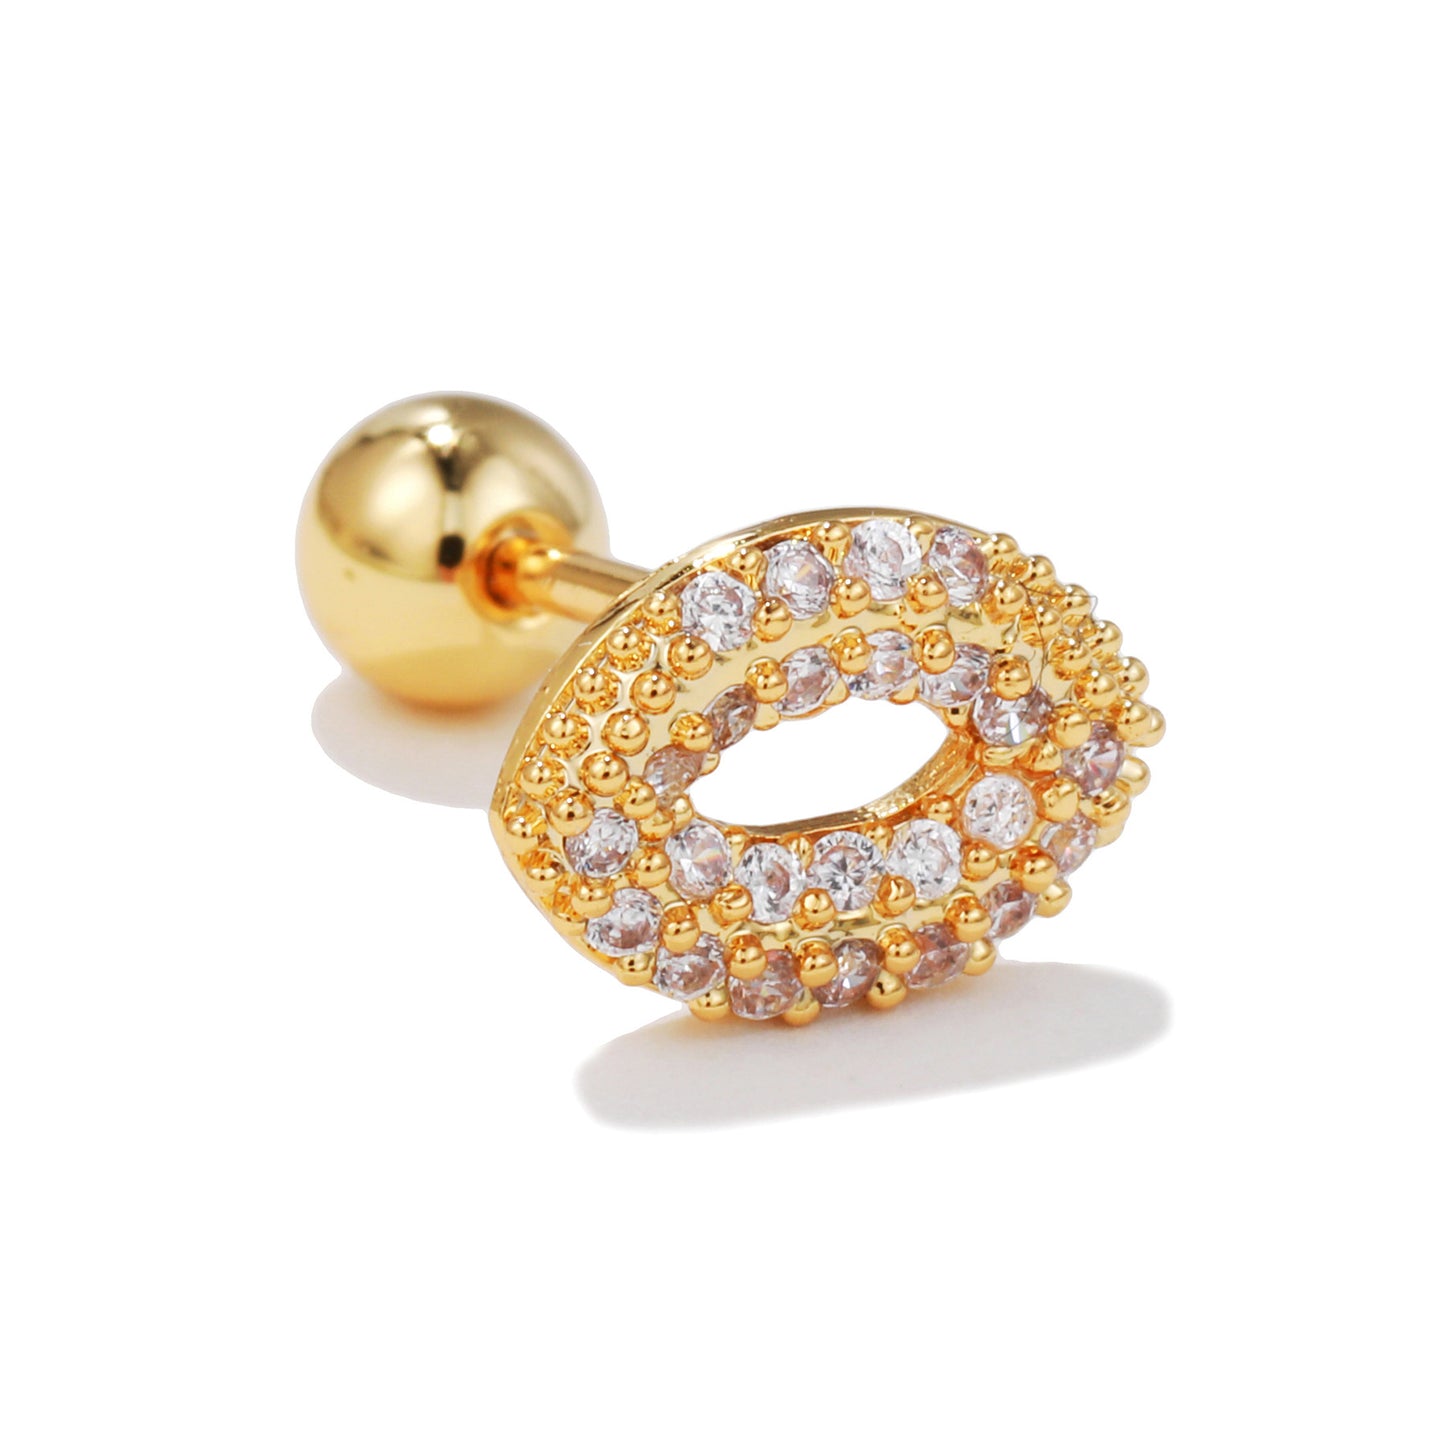 1 Piece Fashion Heart Shape Inlay Brass Zircon Earrings